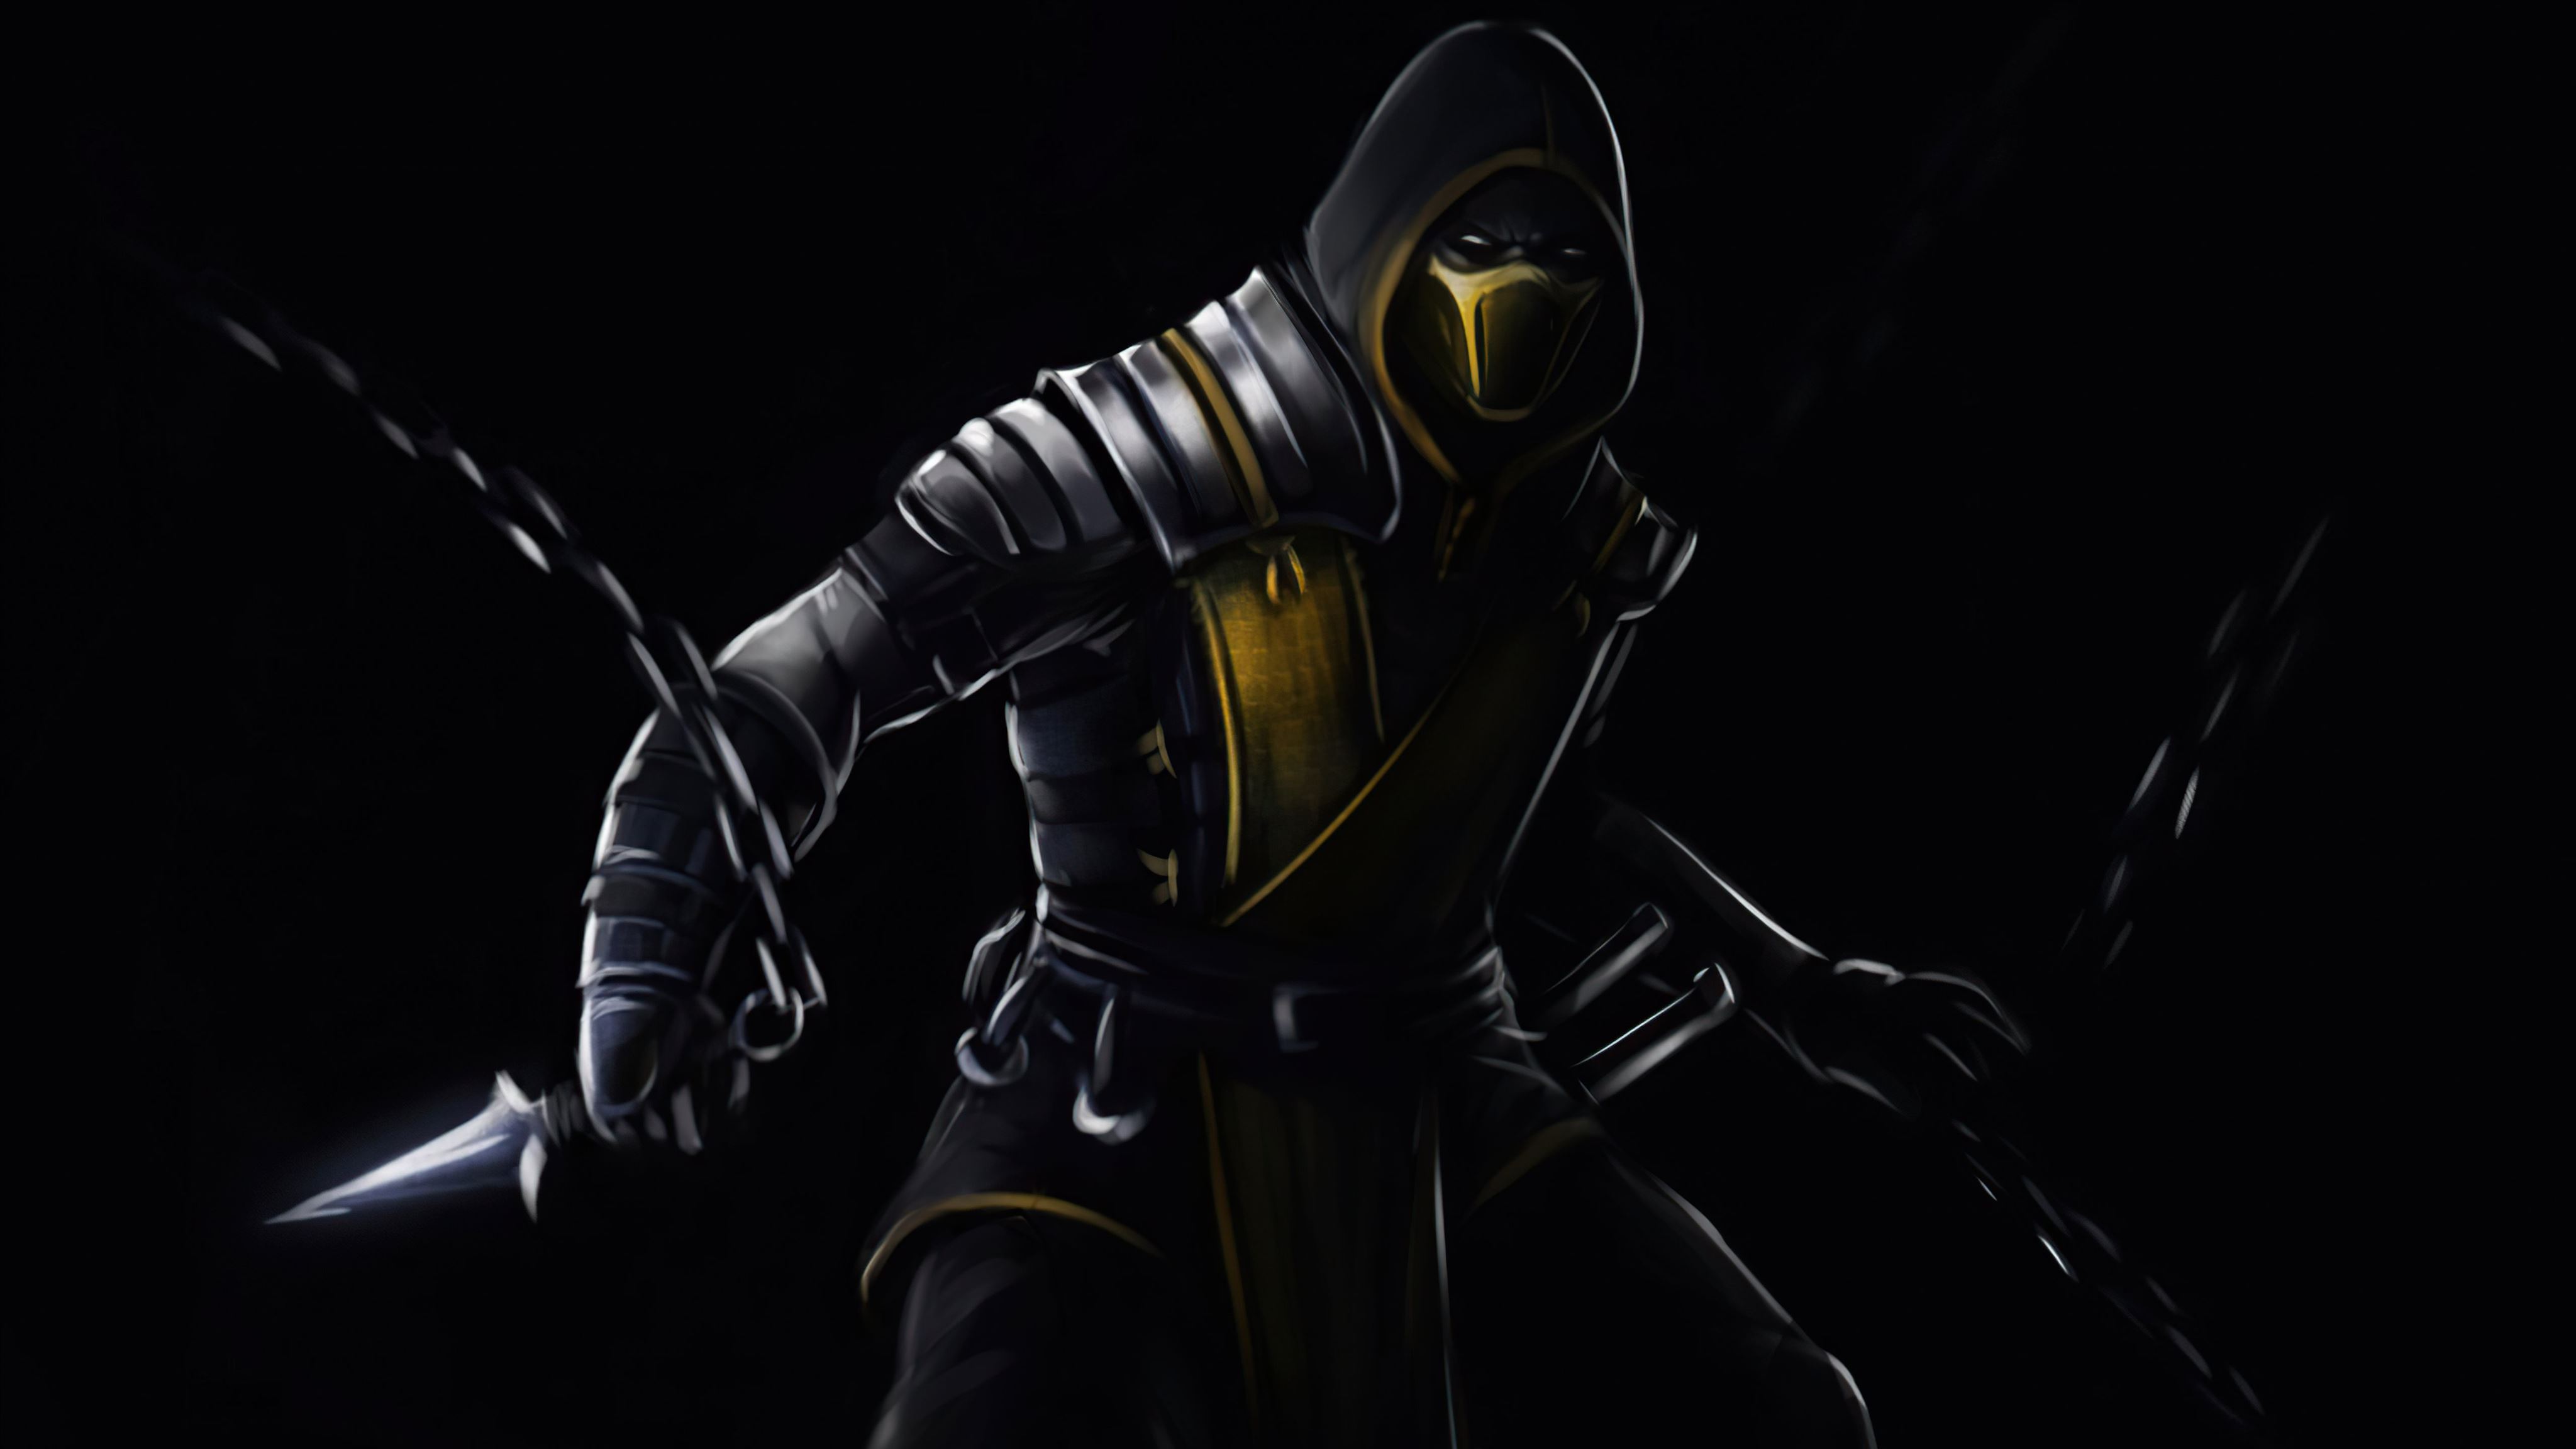 Mortal Kombat, Scorpion, fan art HD wallpaper | Pxfuel